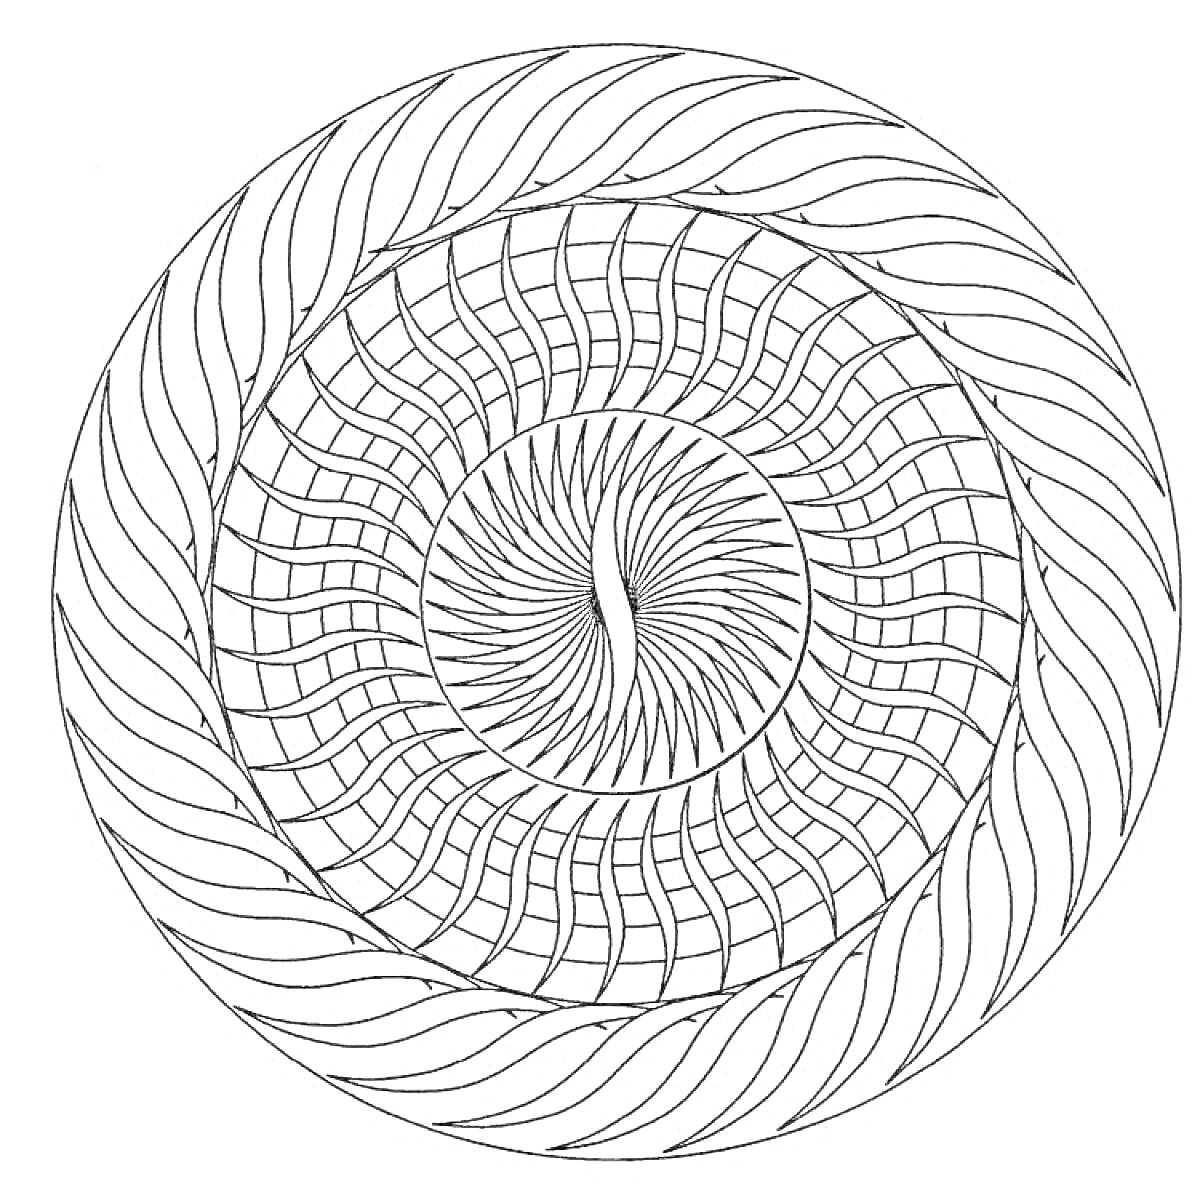 Раскраска круговая спираль с сложенным узором, волнистыми линиями и концентрированным центром